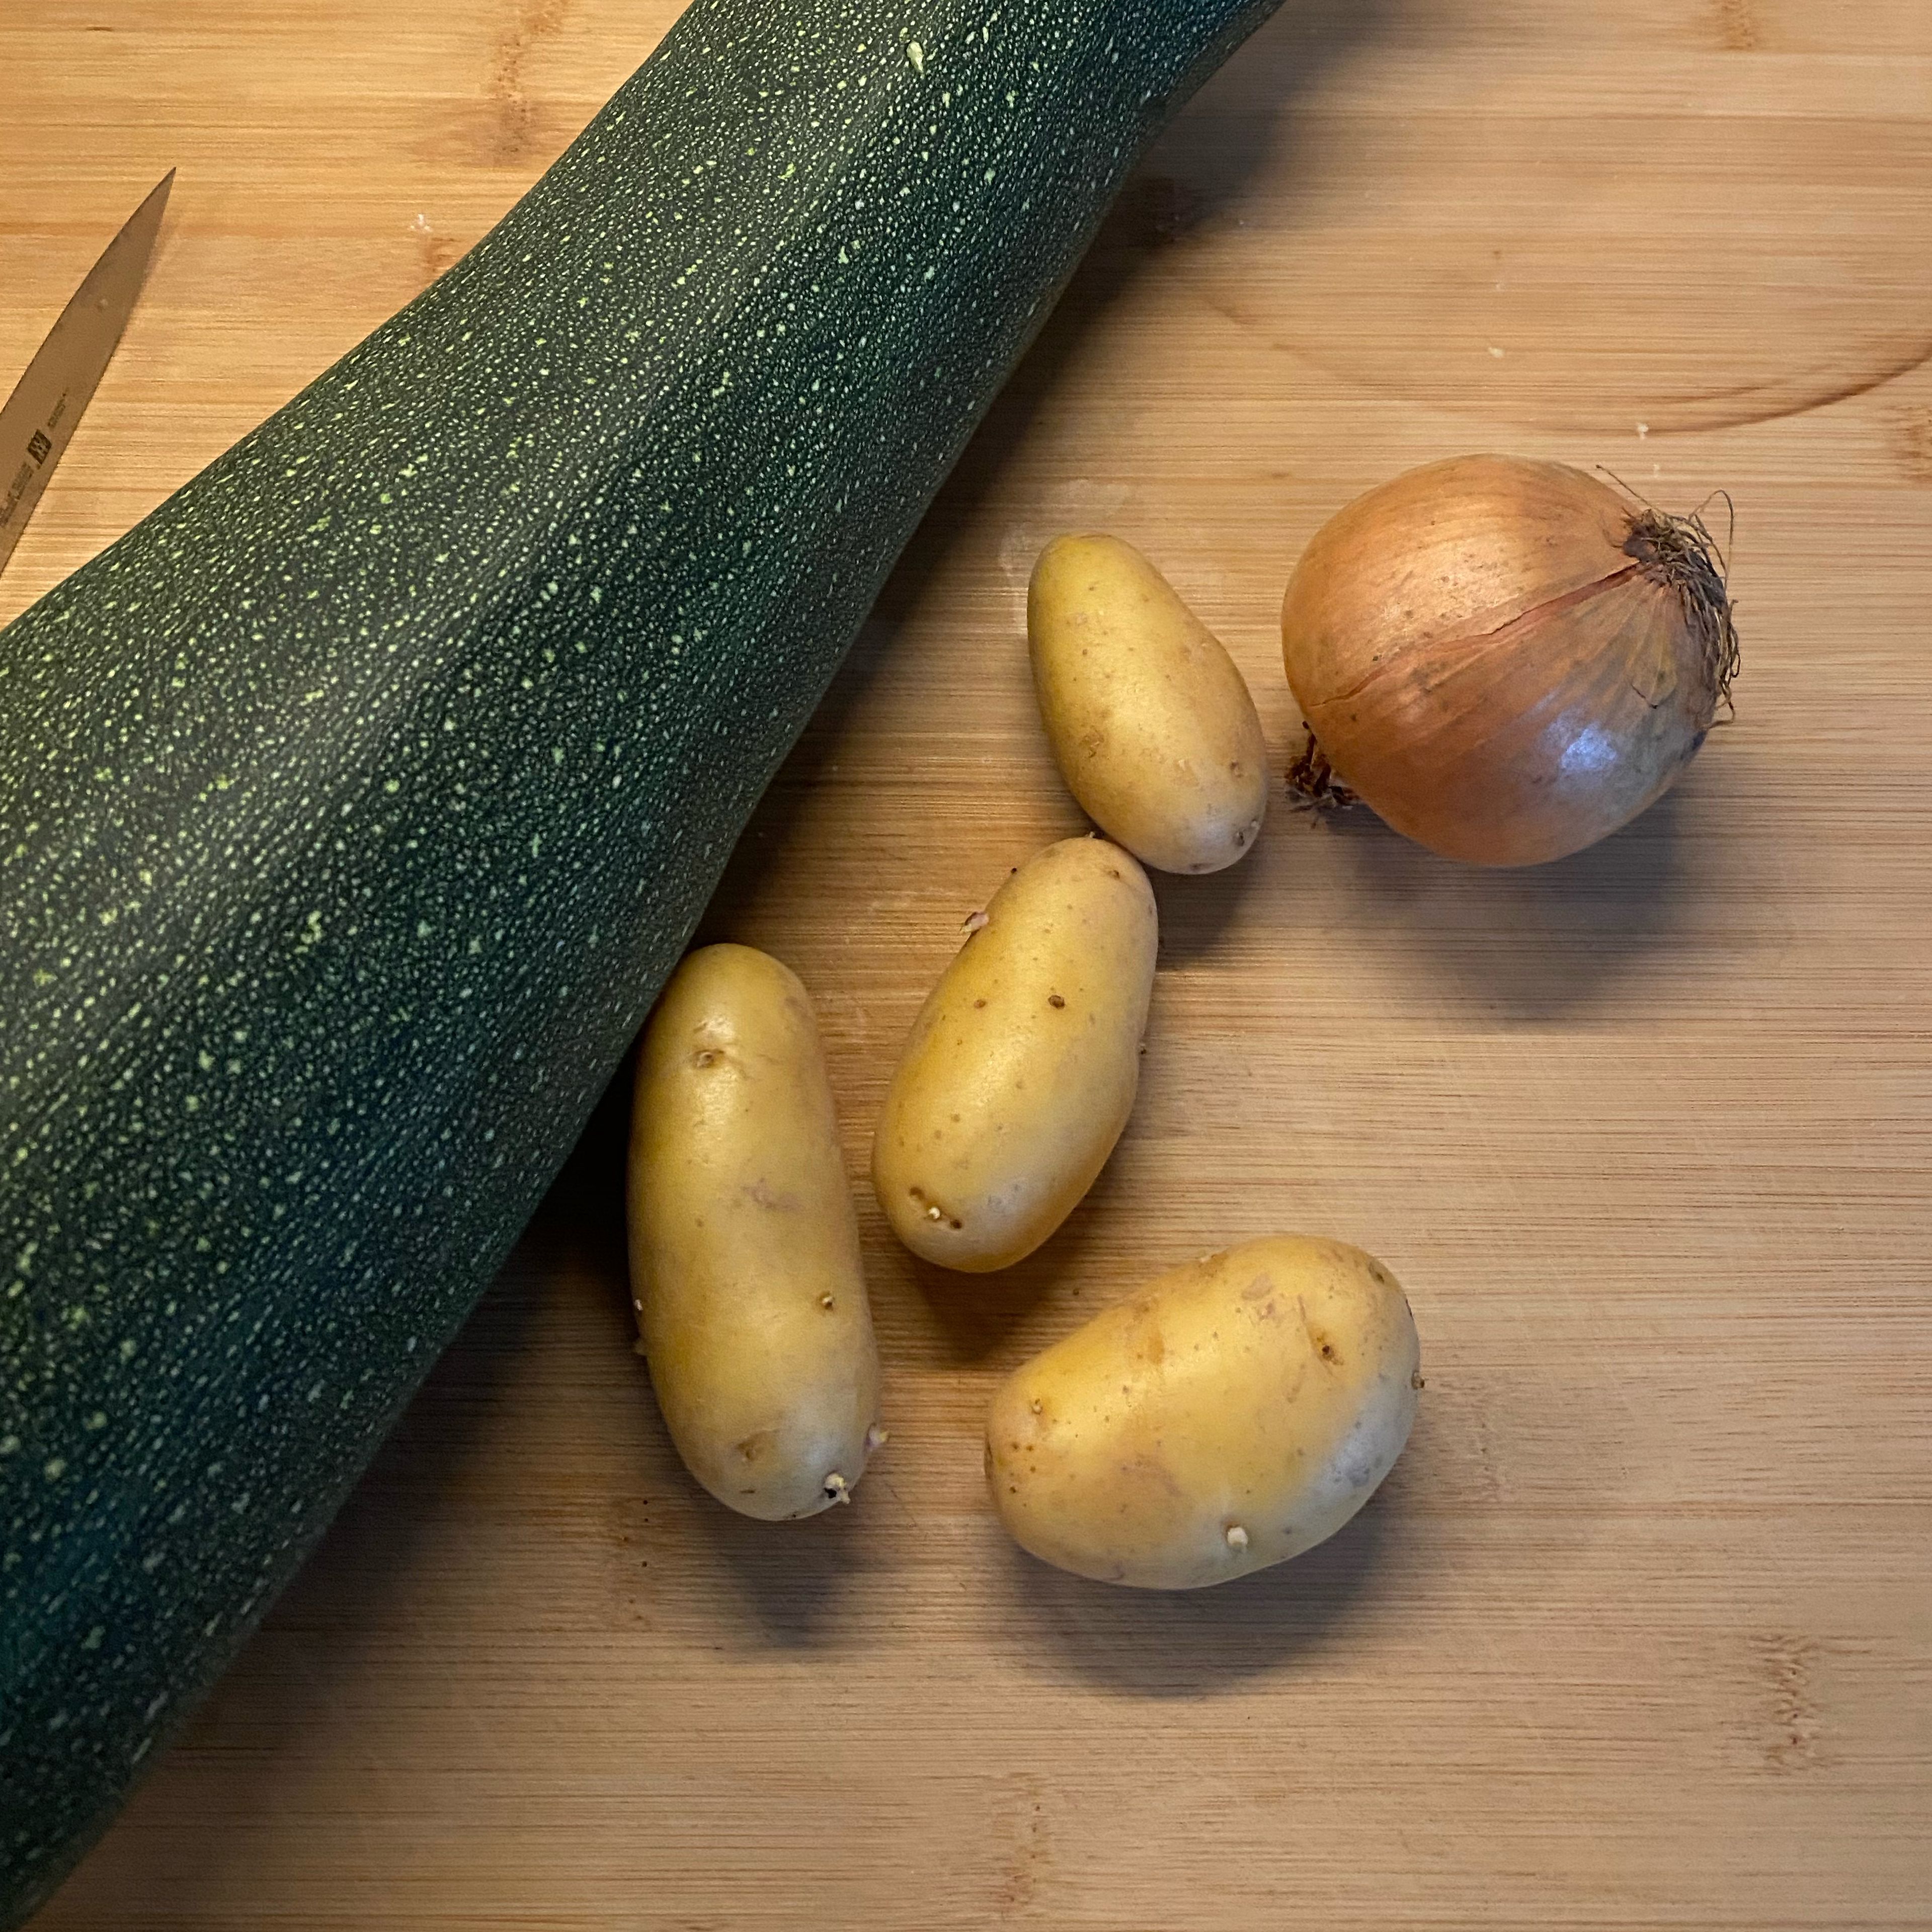 Zucchini waschen und in große Würfel schneiden. Kartoffeln schälen und ebenfalls würfeln. Zwiebel schälen und grob schneiden.